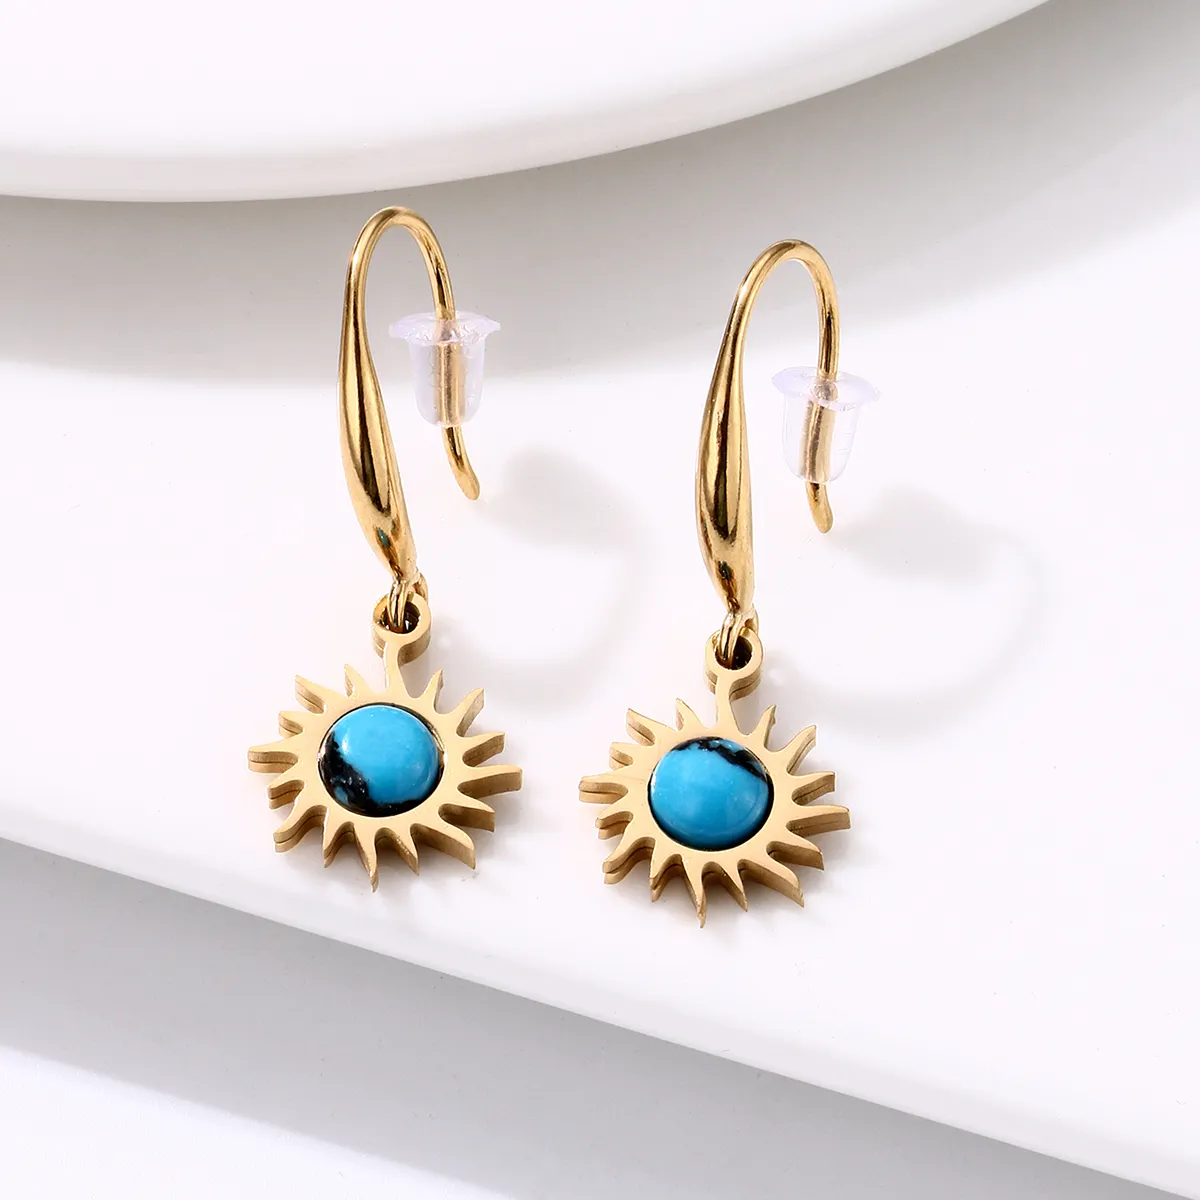 stainless steel earrings hoops sun shape in blue Gem earings women stainless steel light luxury hoop for women